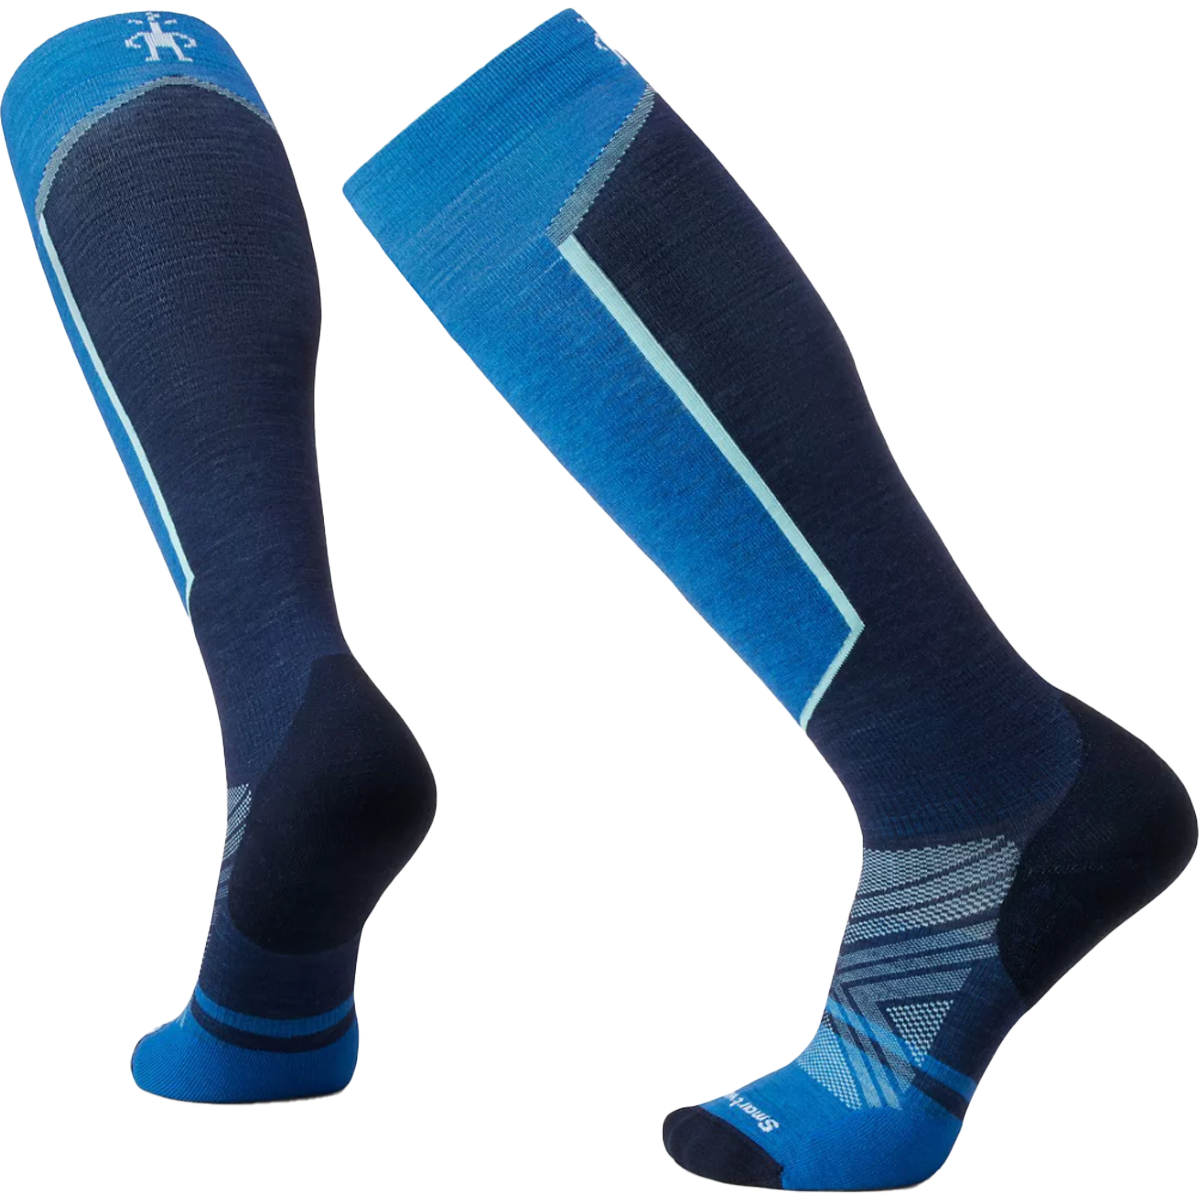 Omni-Heat™ Grid Midweight Ski Sock